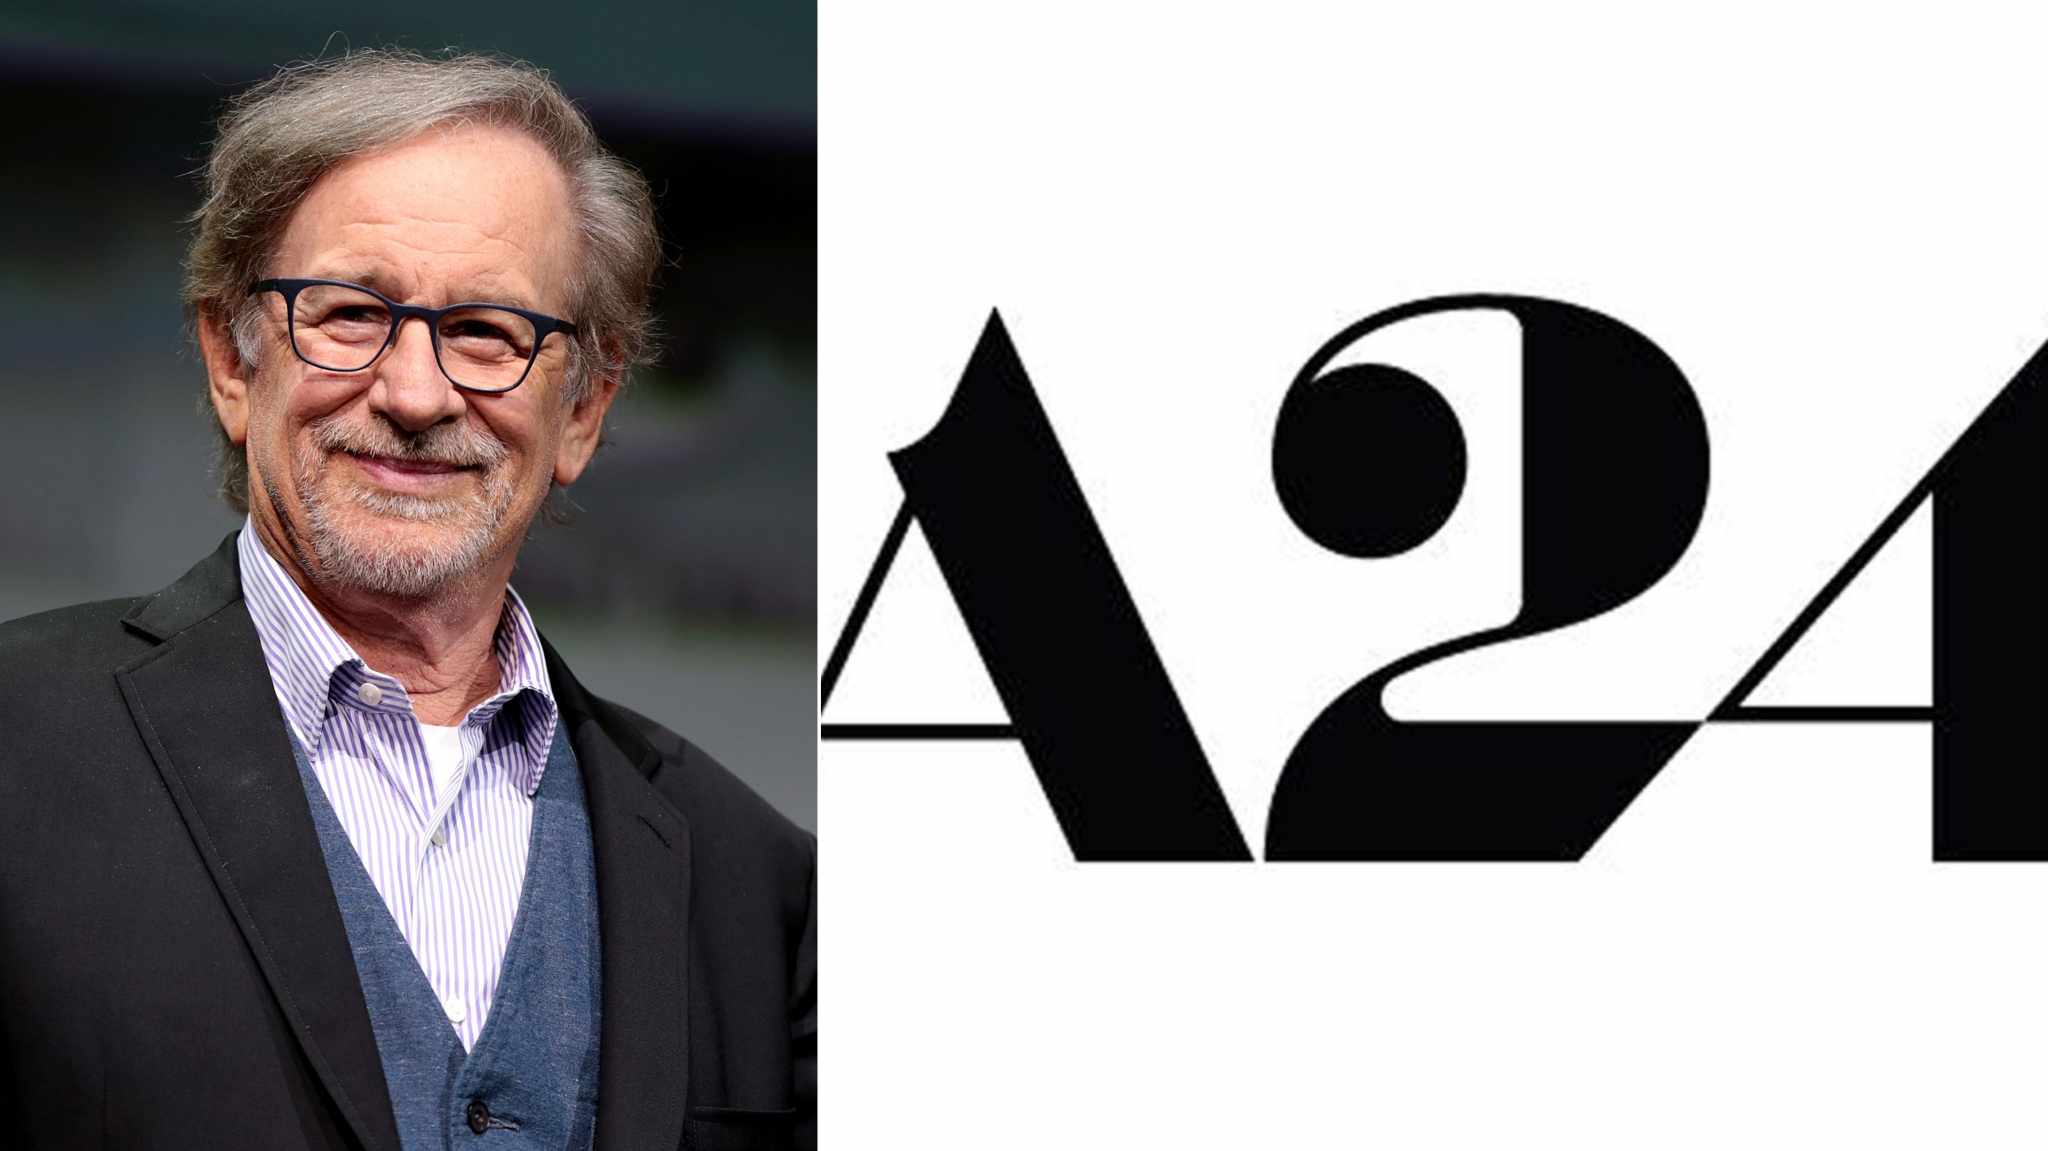 The Heaven & Earth Grocery Store: A24 e Steven Spielberg produrranno insieme l’adattamento